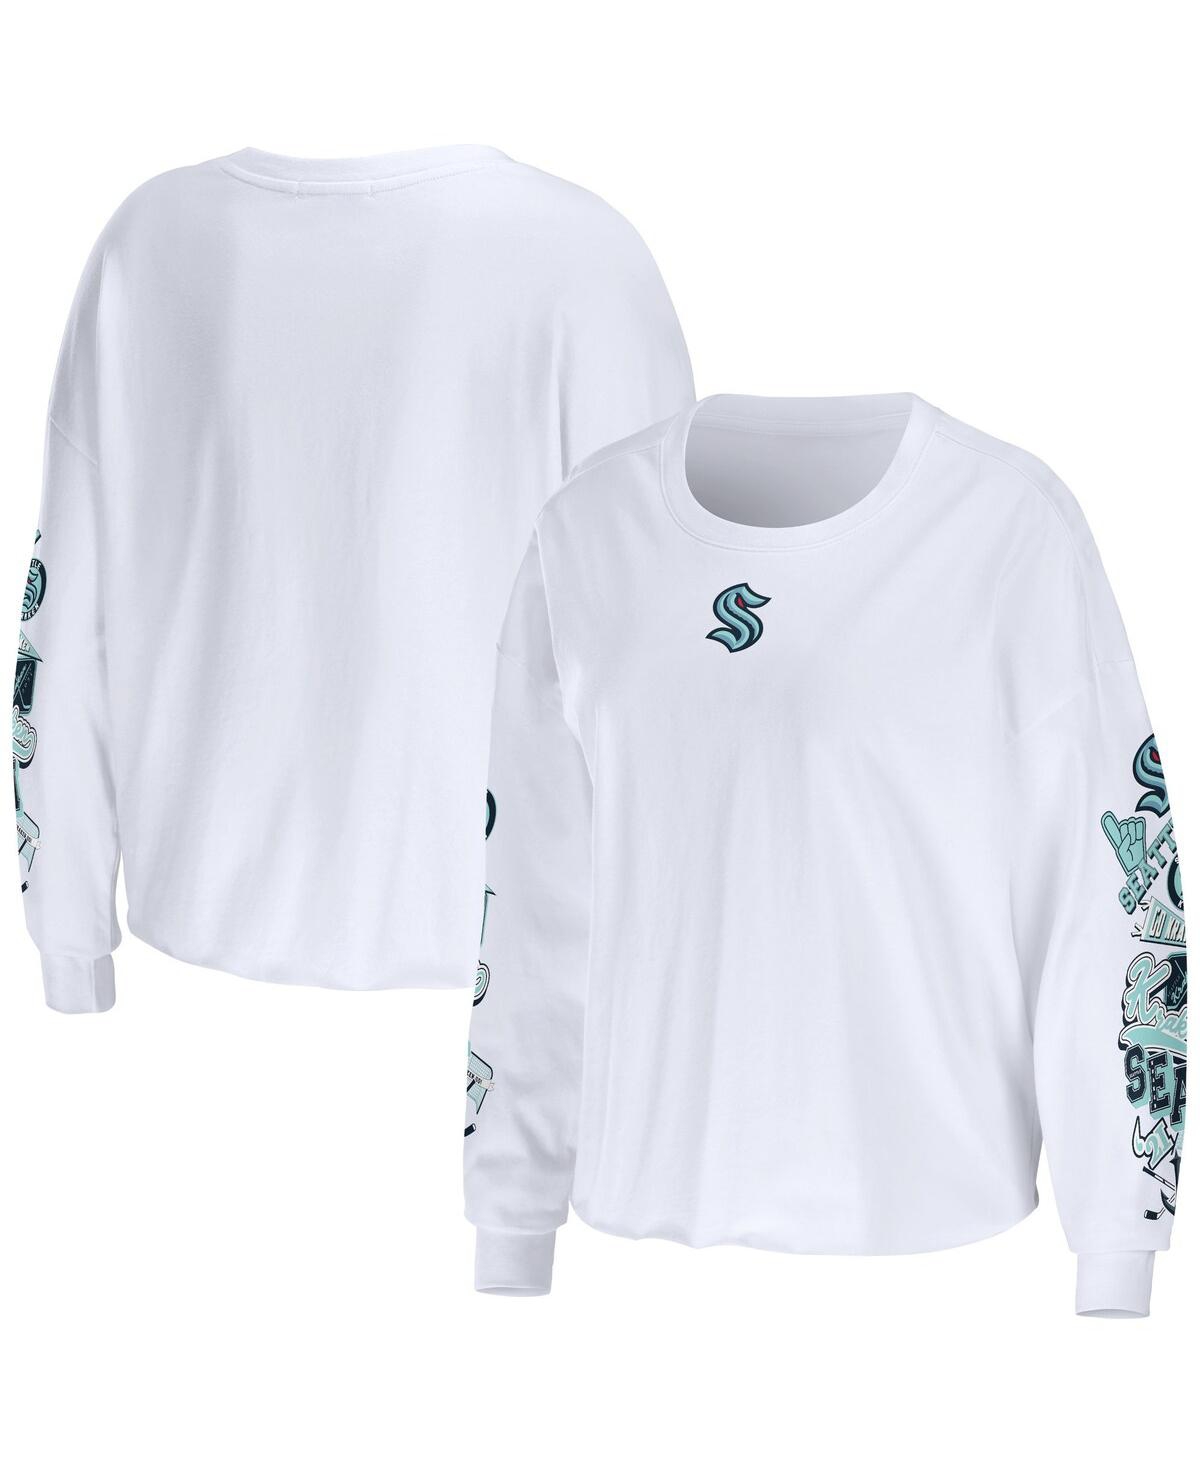 Shop Wear By Erin Andrews Women's  White Seattle Kraken Celebration Cropped Long Sleeve T-shirt